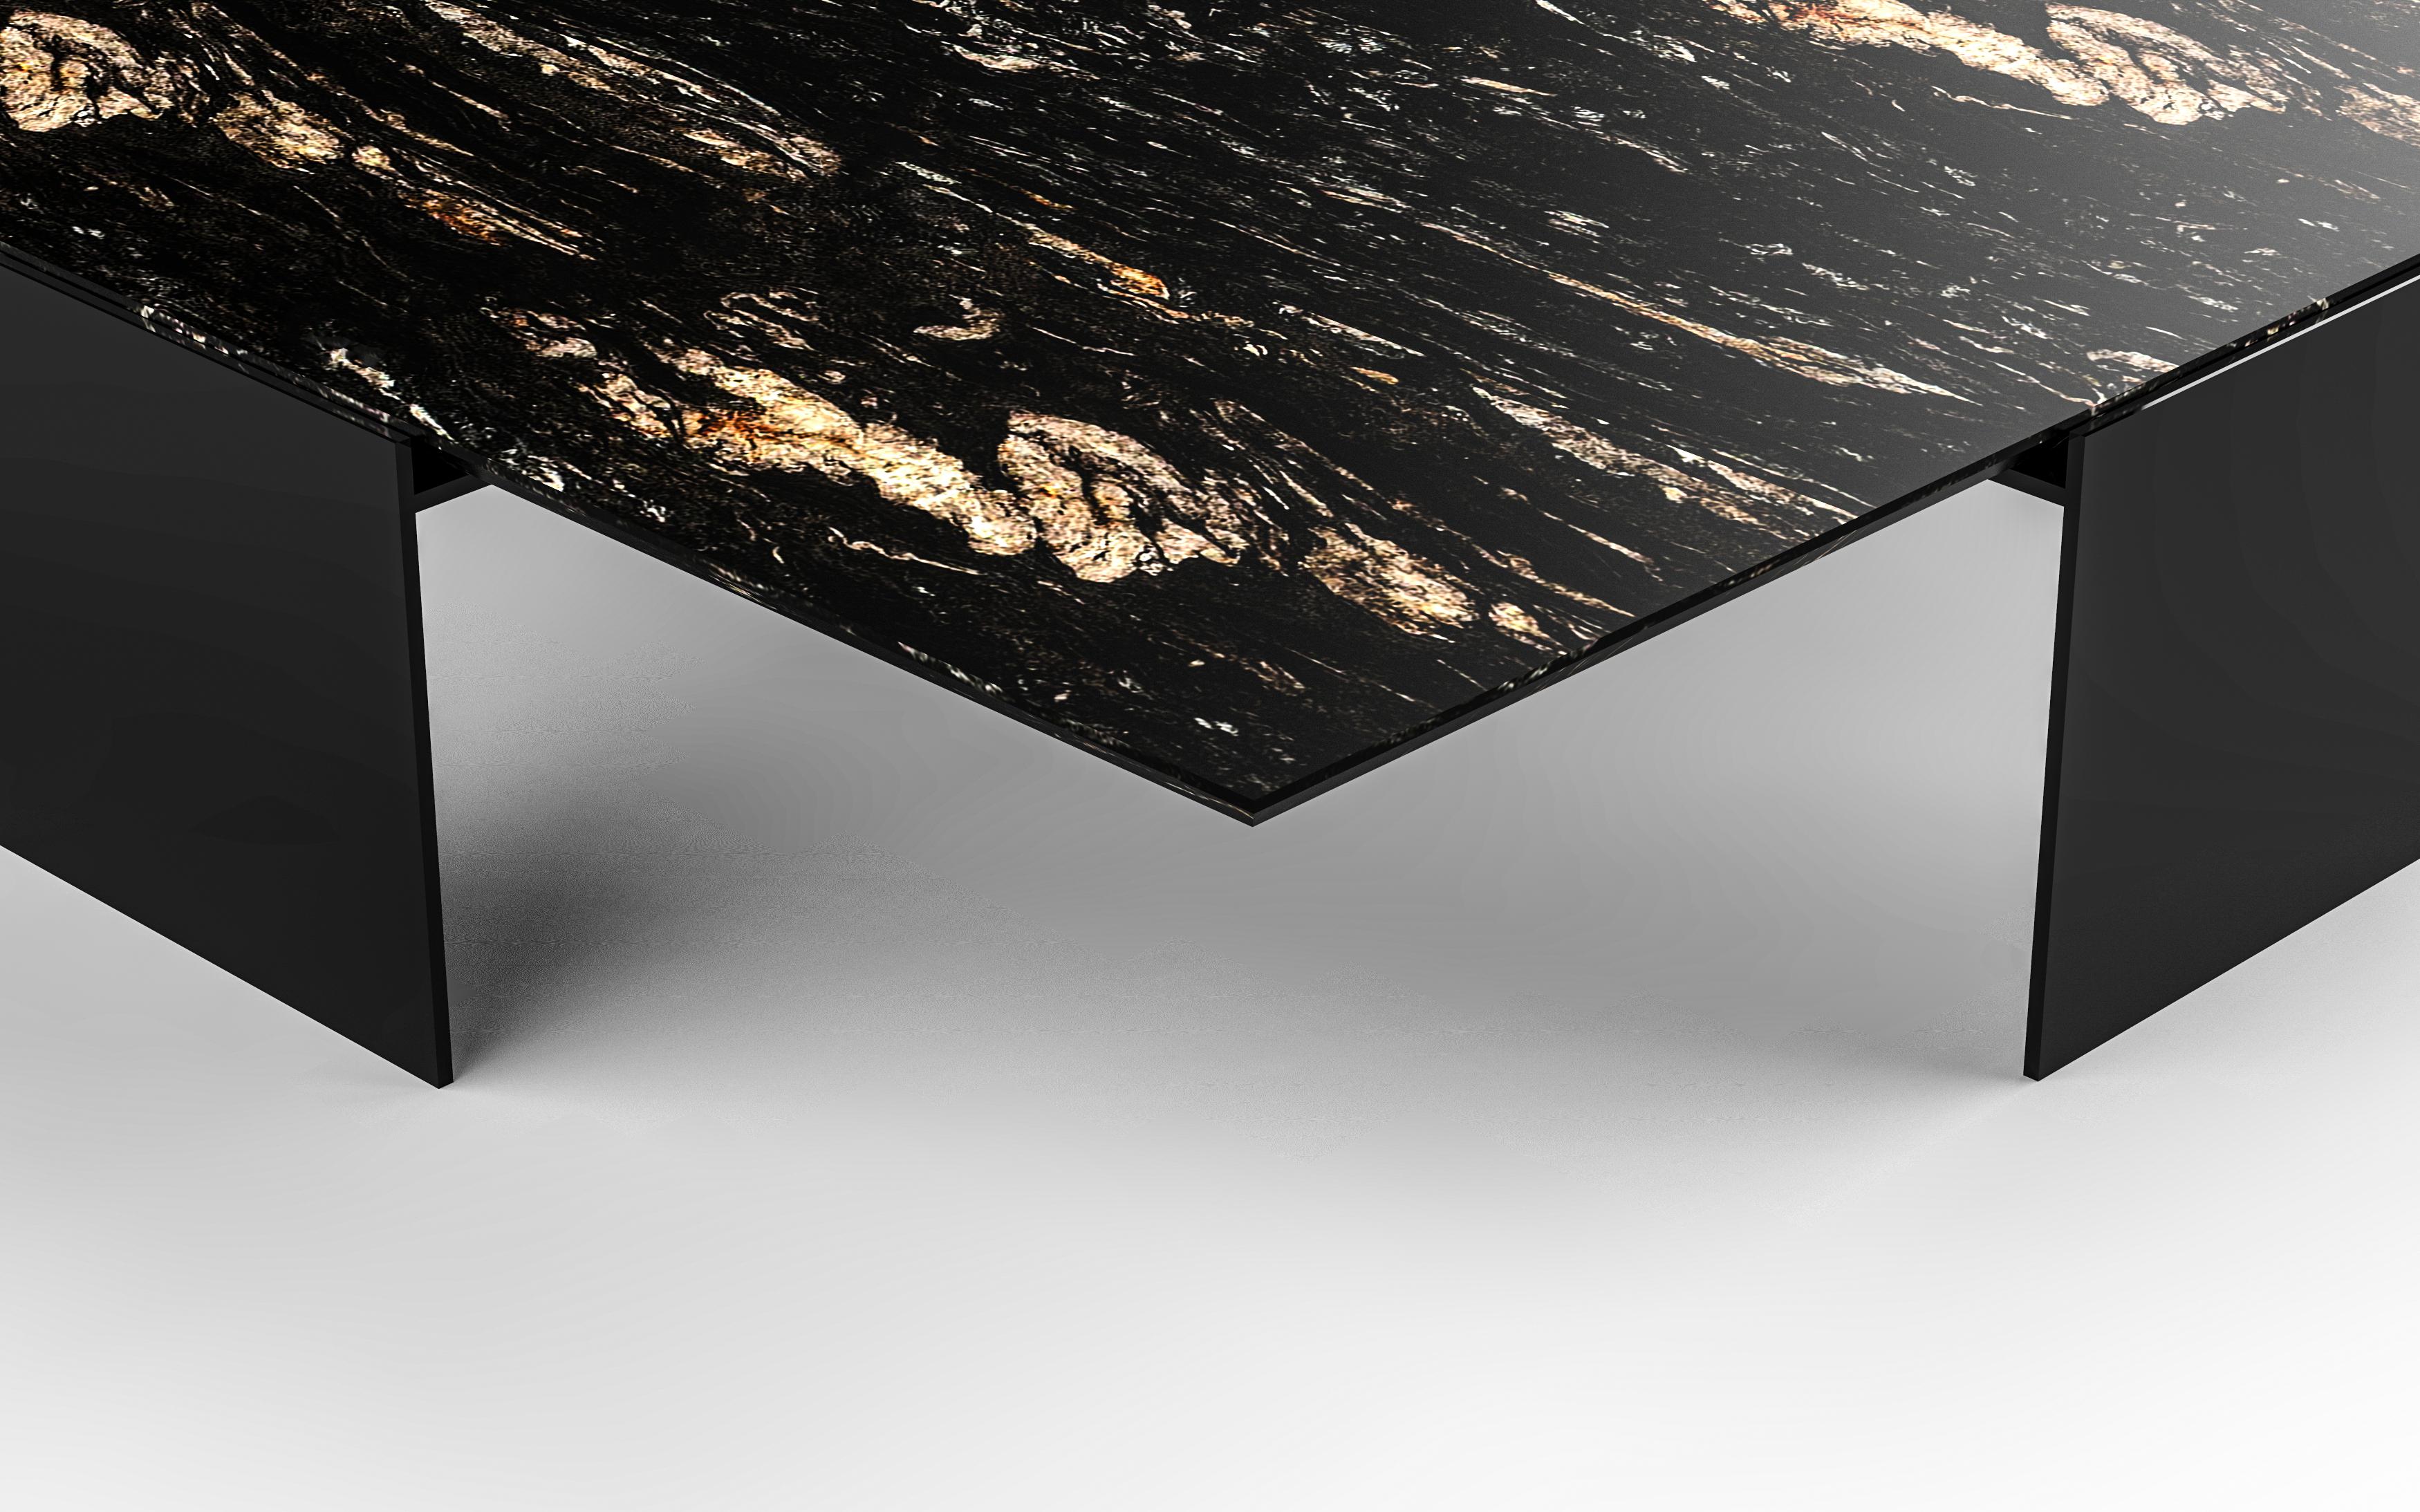 Handgefertigte Stein- und Metallelemente unterstreichen die reine Form des Fin Cocktail Table von Chai Ming Studios.
Die freitragende Steinplatte ruht auf einem architektonischen Stahlrahmen und ist mit einer präzisen, abgeschrägten Kante